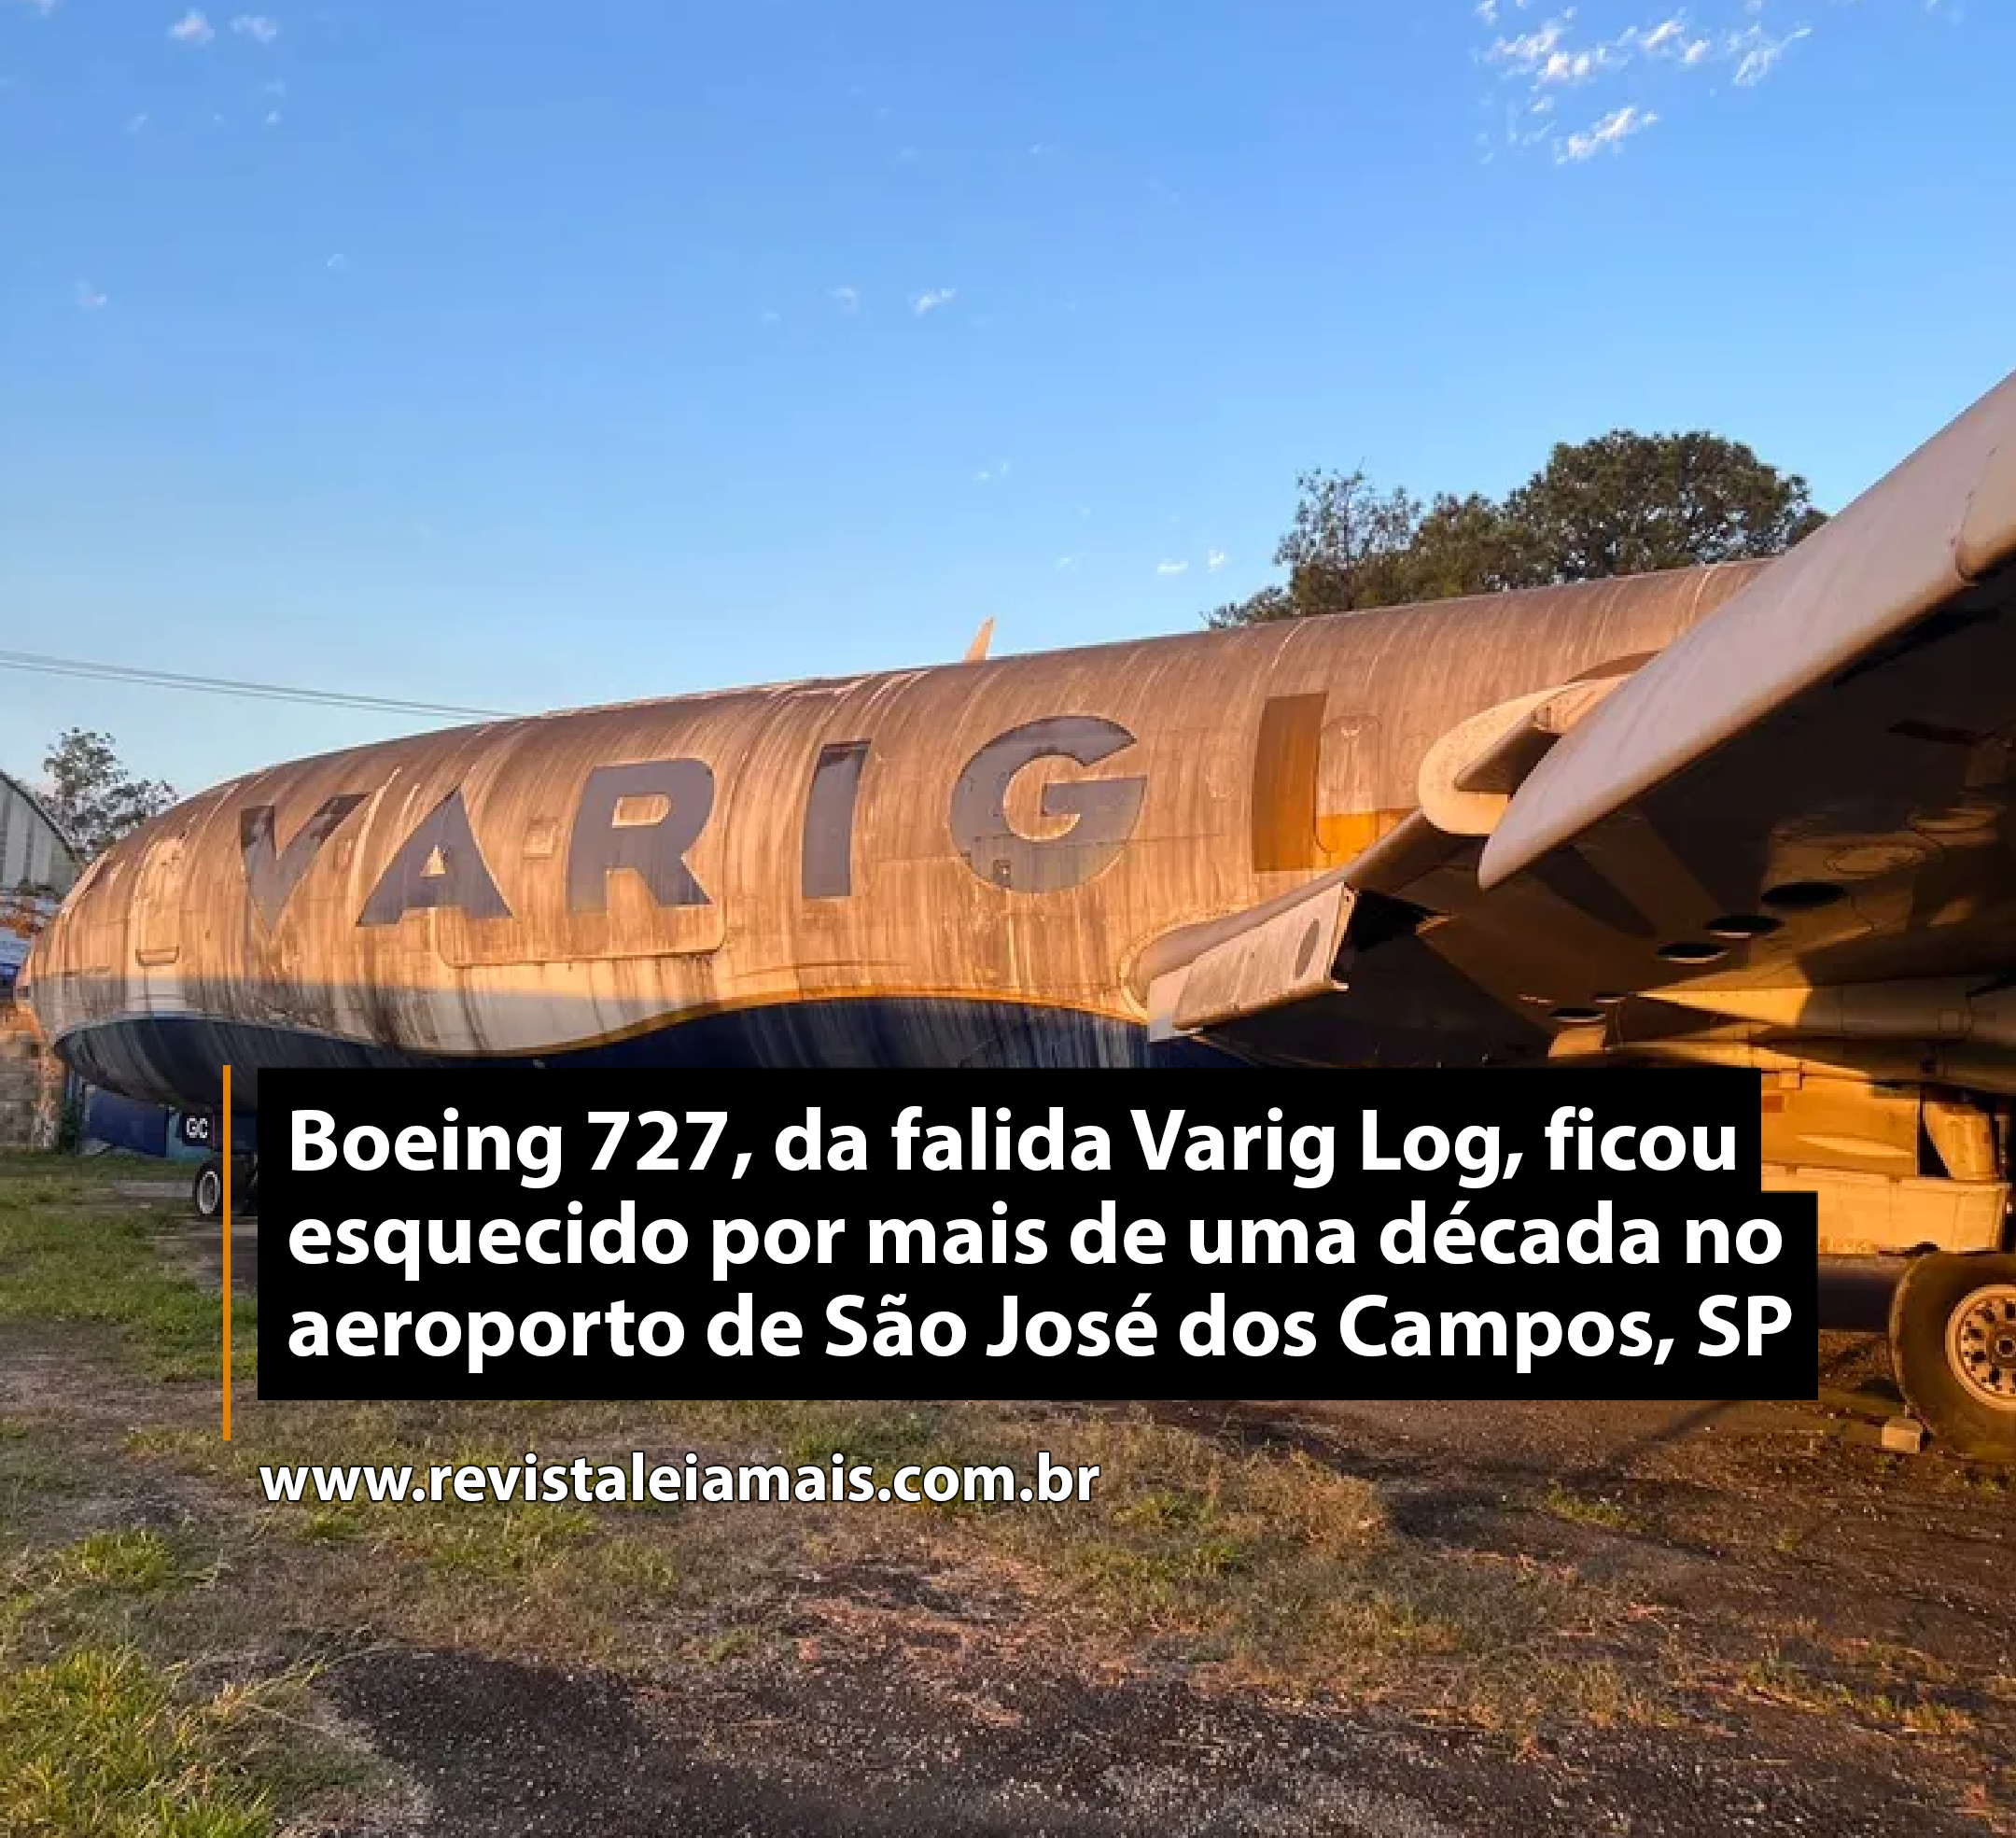 Boeing 727, da falida Varig Log, ficou esquecido por mais de uma década no aeroporto de São José dos Campos, SP